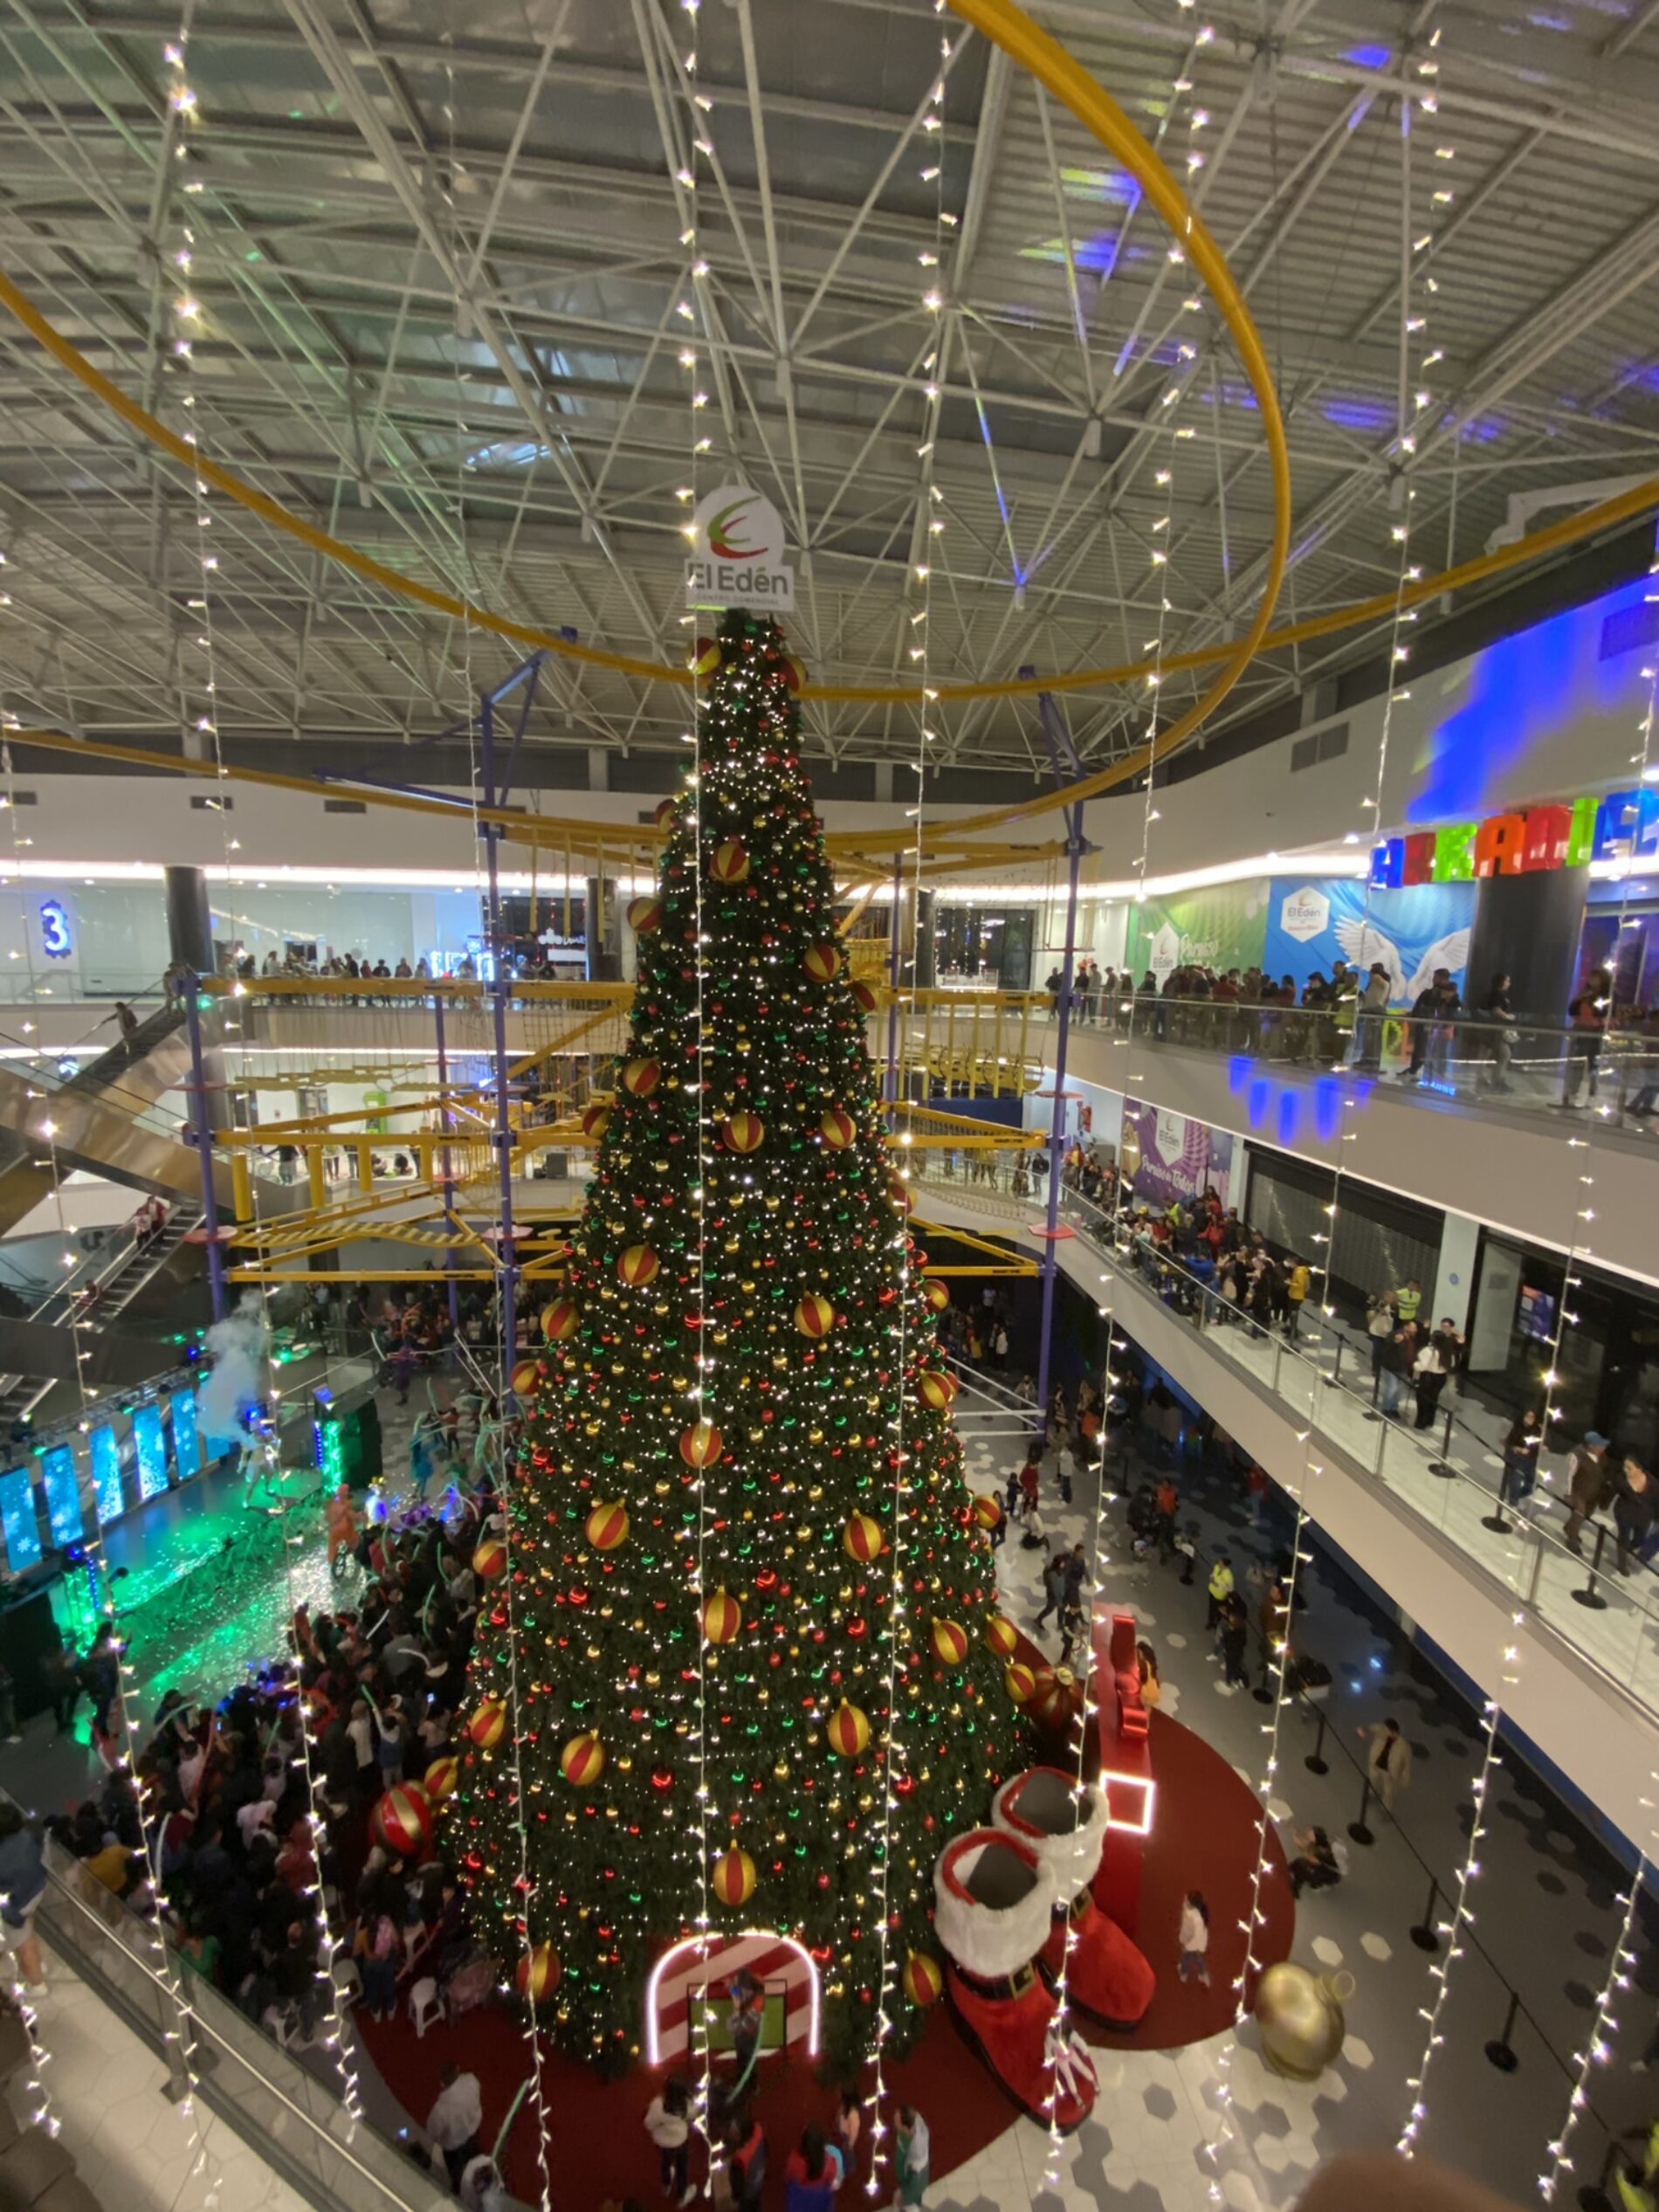 Una Navidad Inolvidable se vive en El Edén Centro Comercial